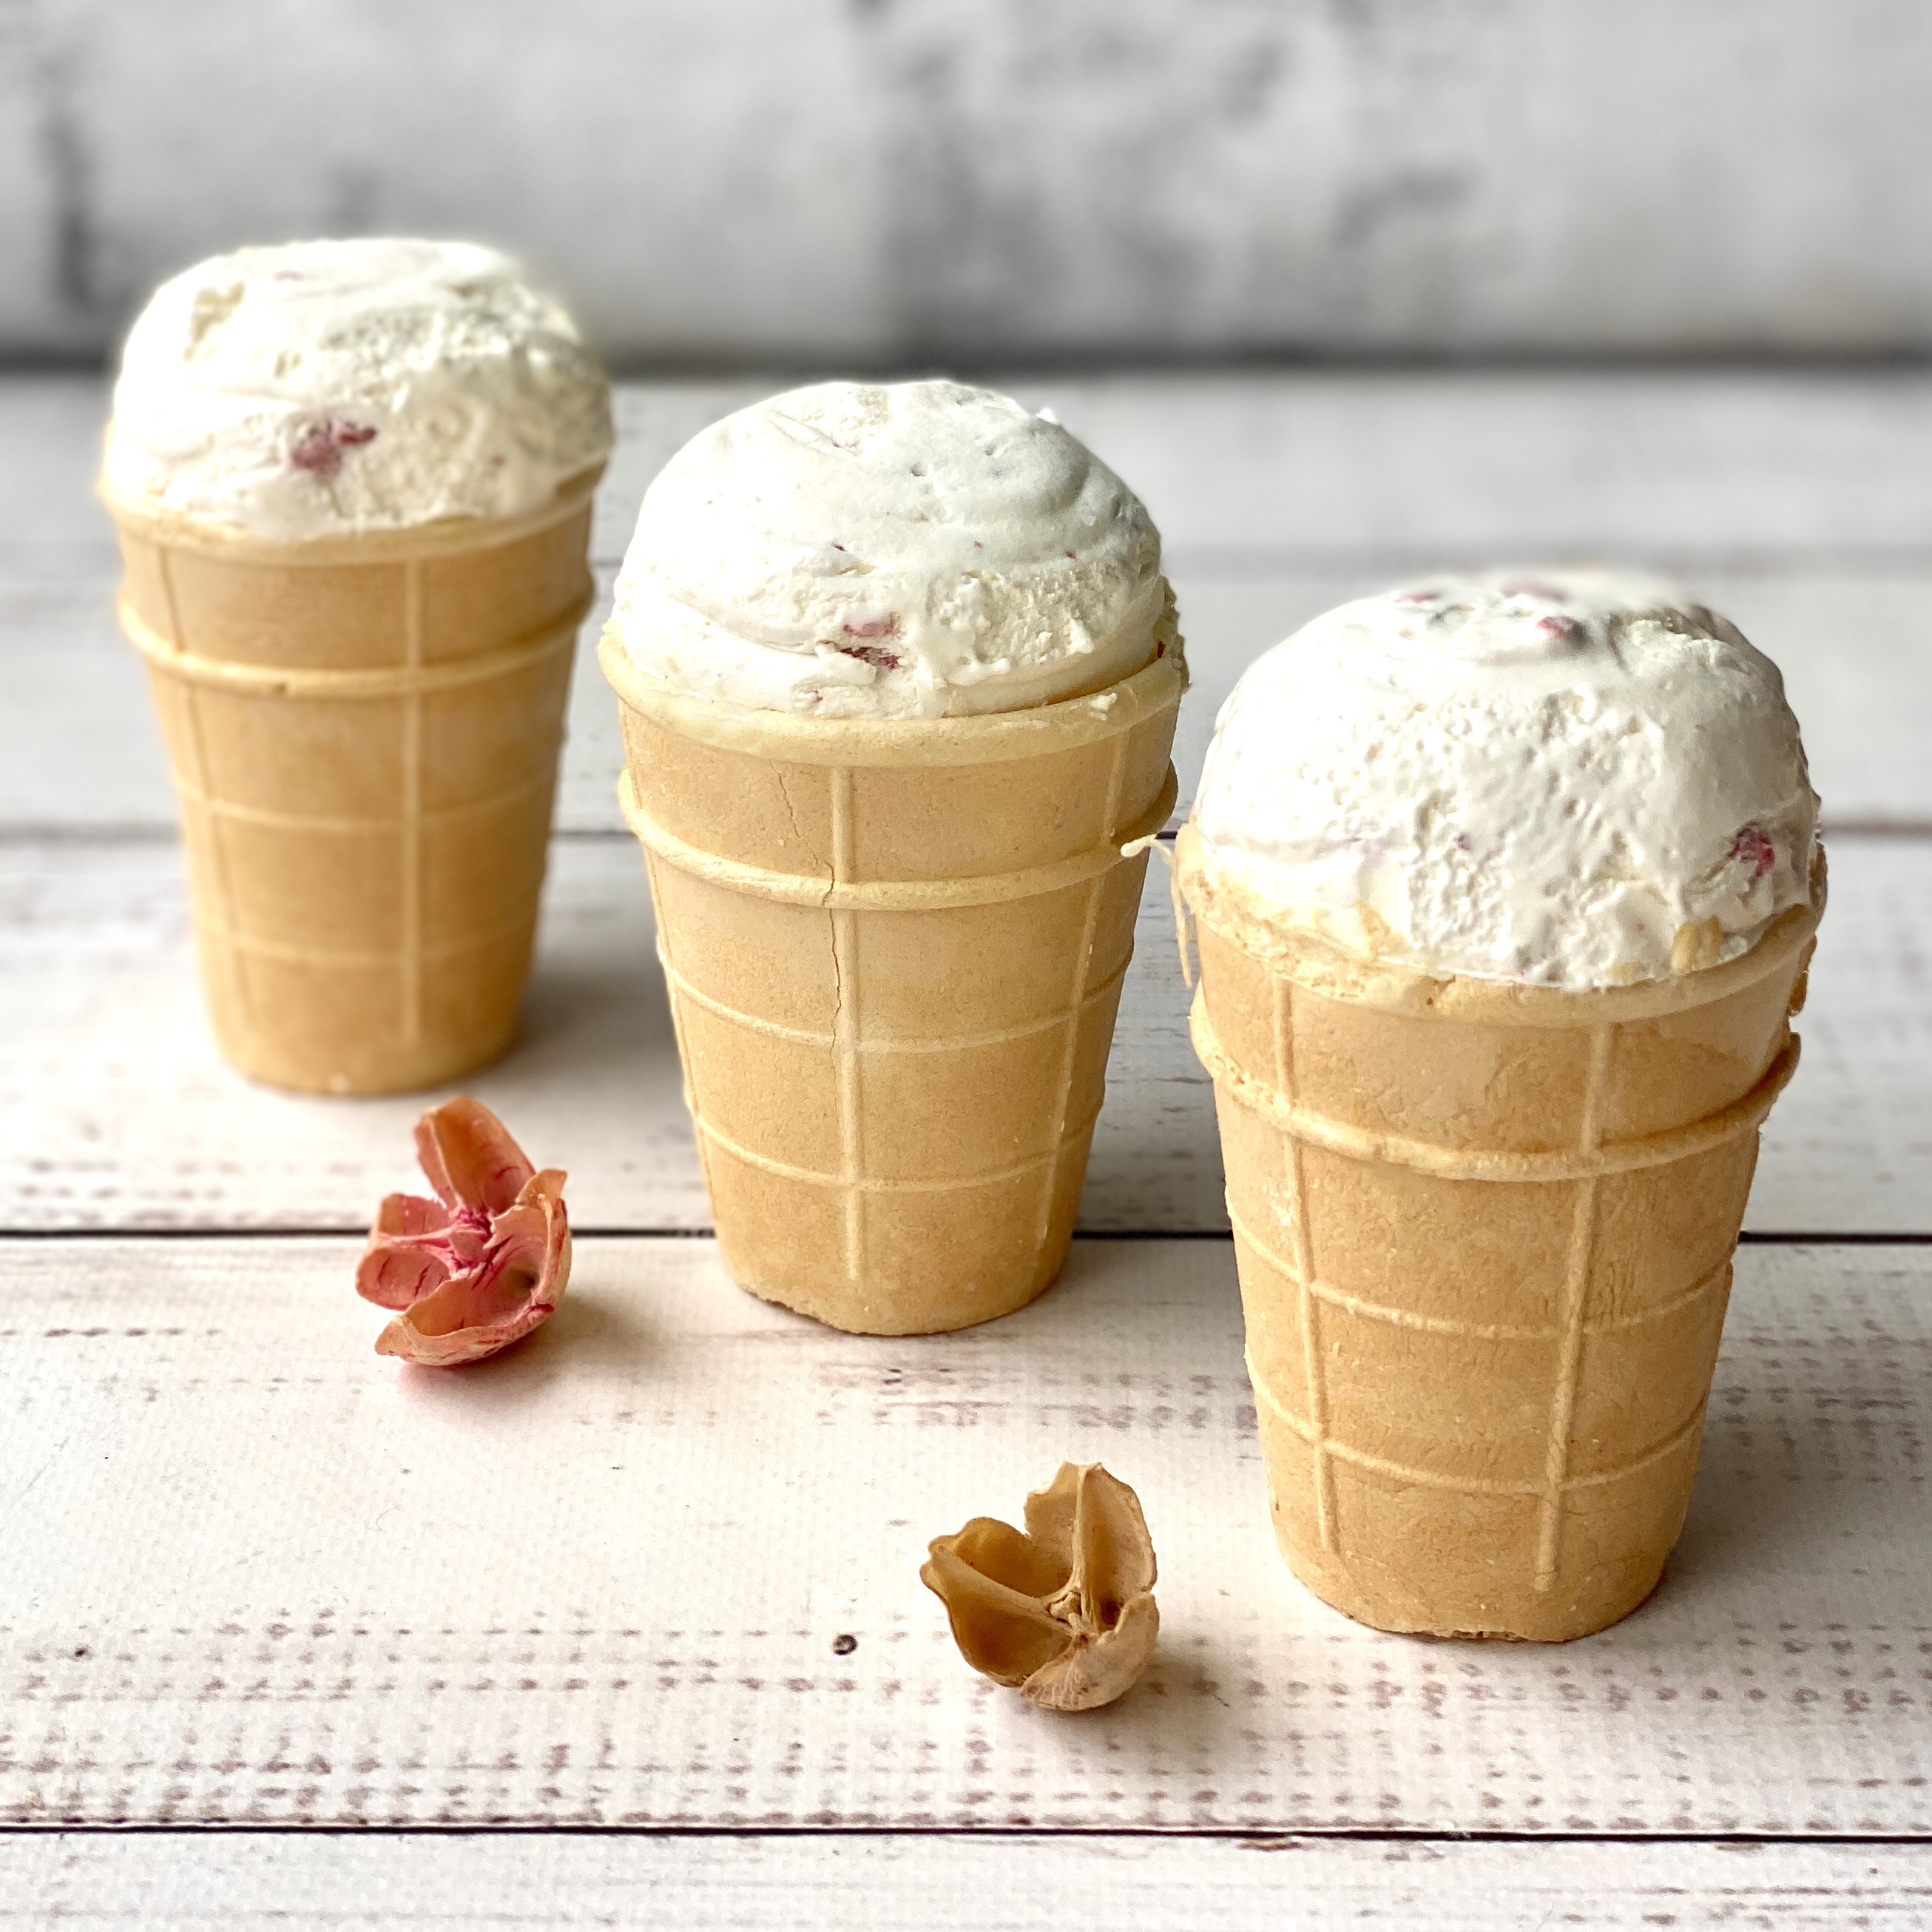 Мороженое в вафельном стаканчике Дело в сливках клубника изображение 2